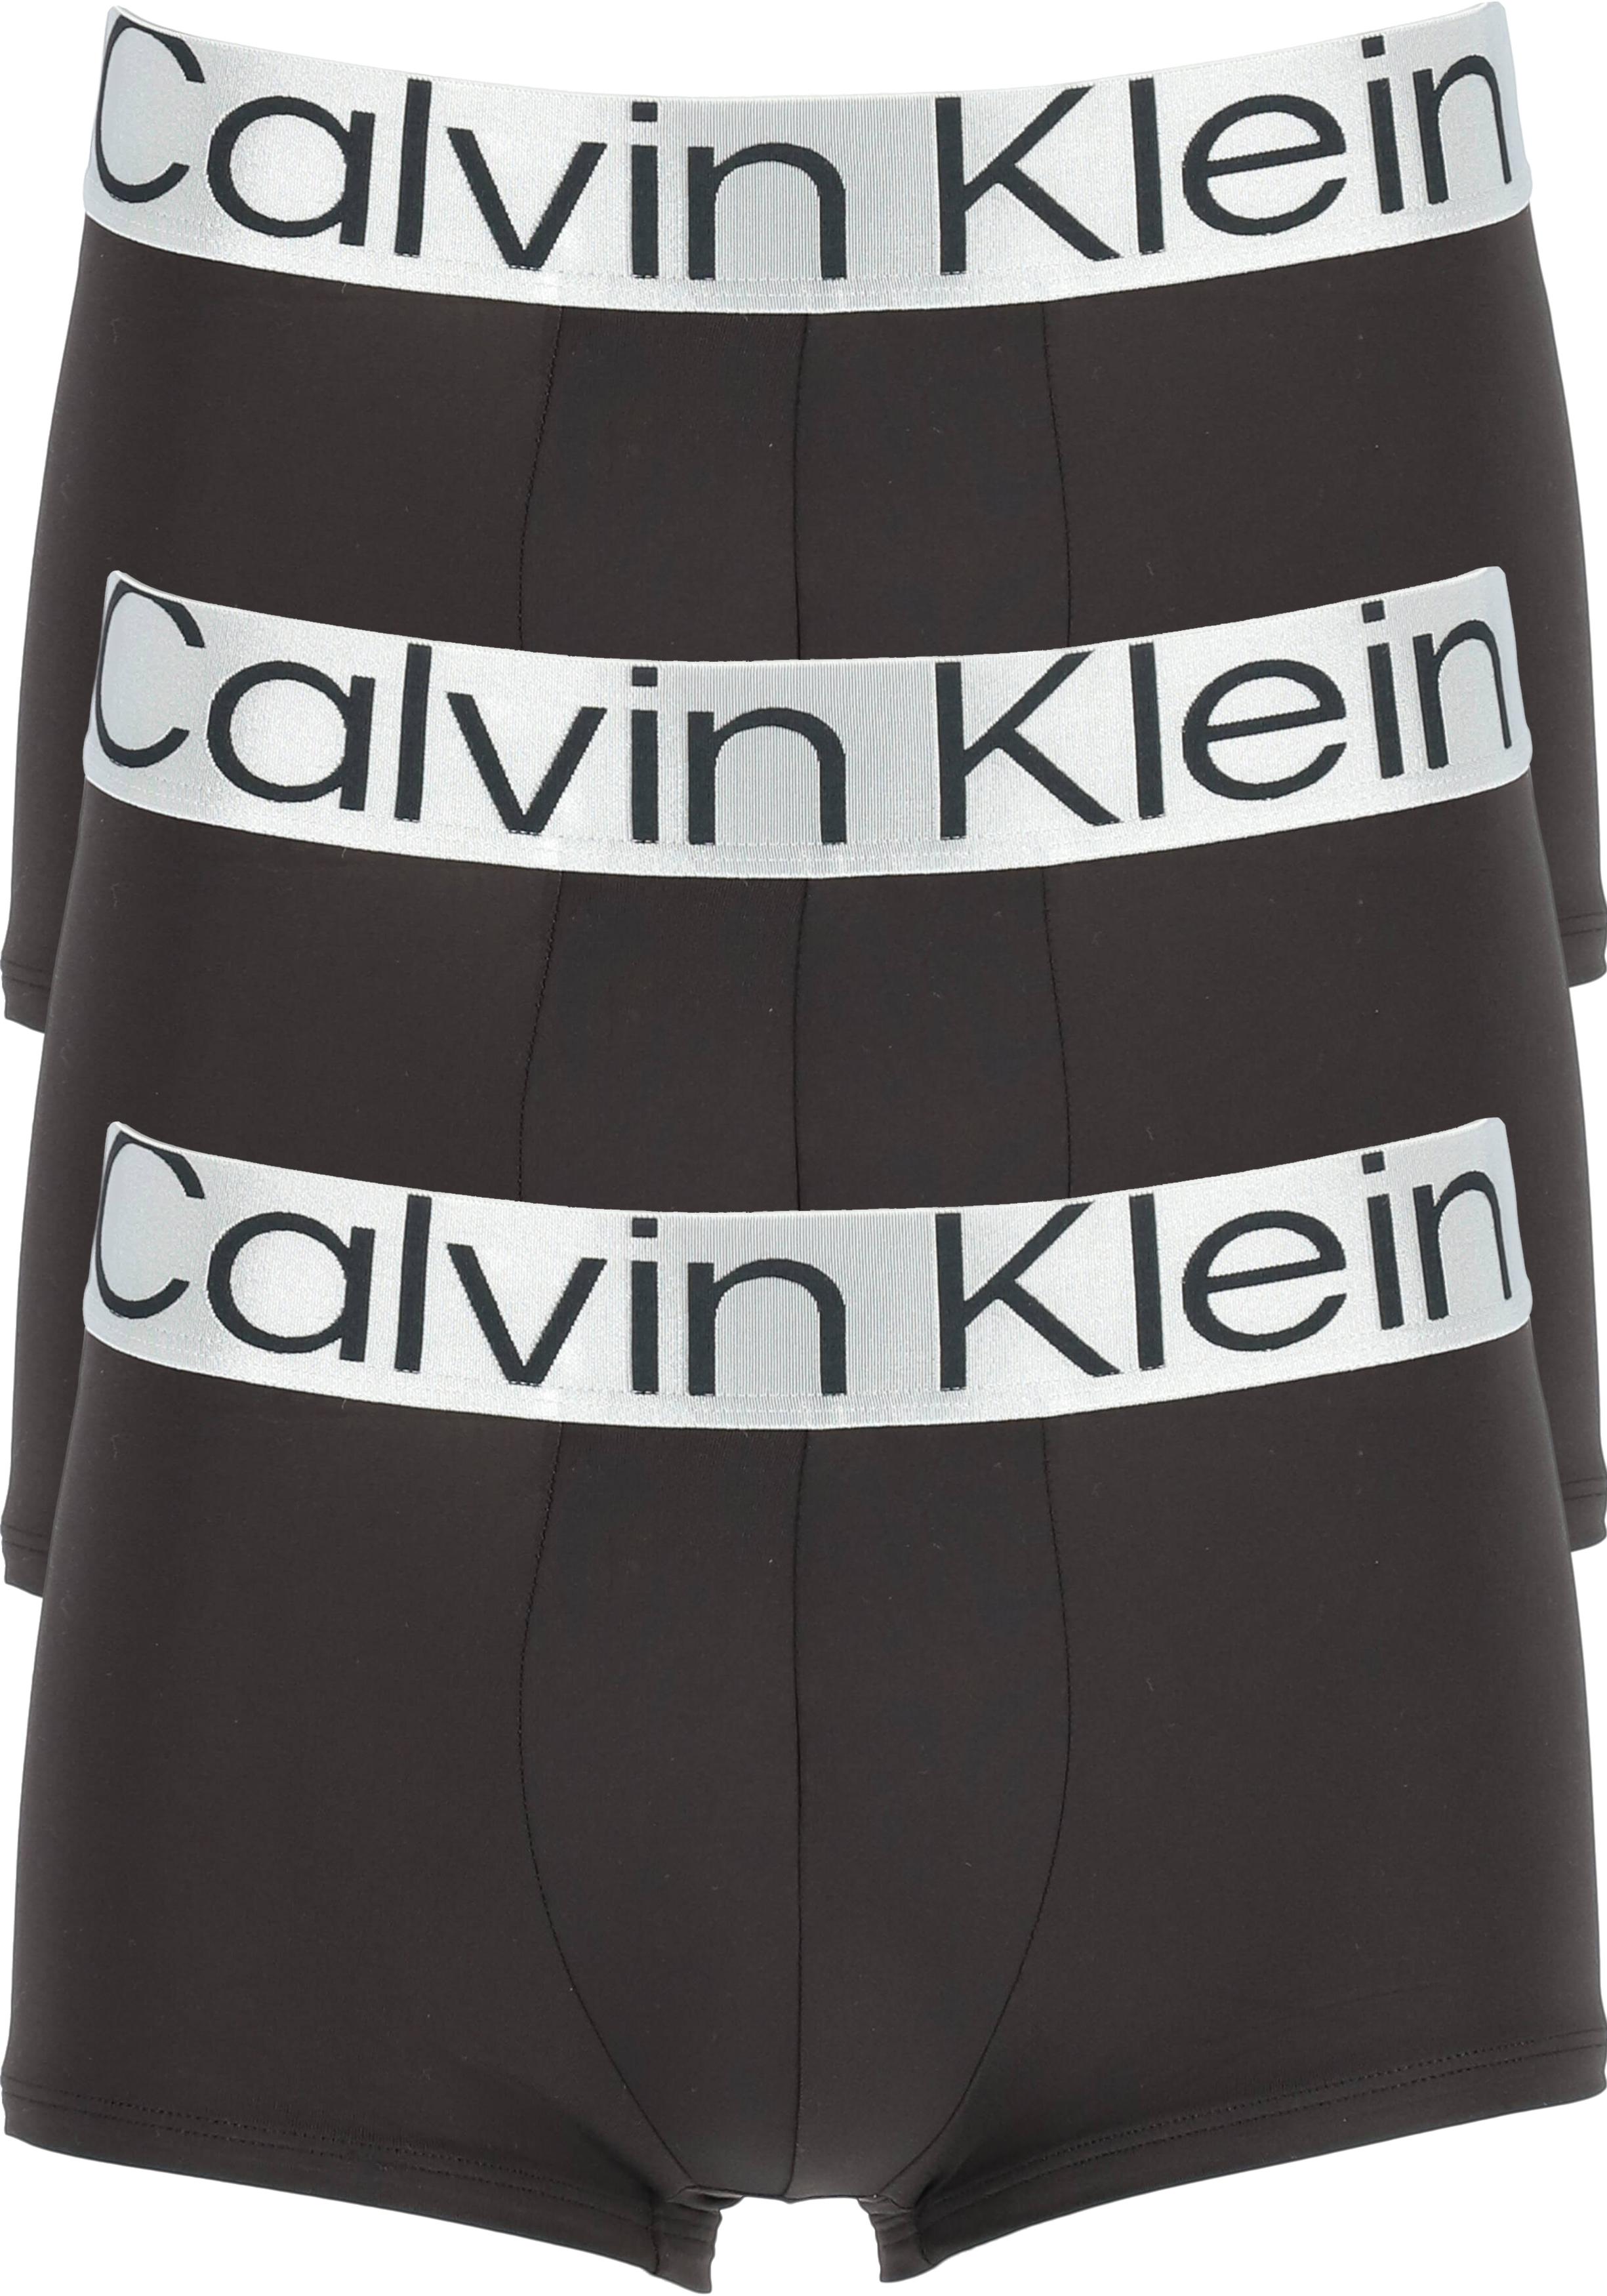 Armstrong vorm Allergie Calvin Klein low rise trunks (3-pack), microfiber lage heren boxers... -  Shop de nieuwste voorjaarsmode